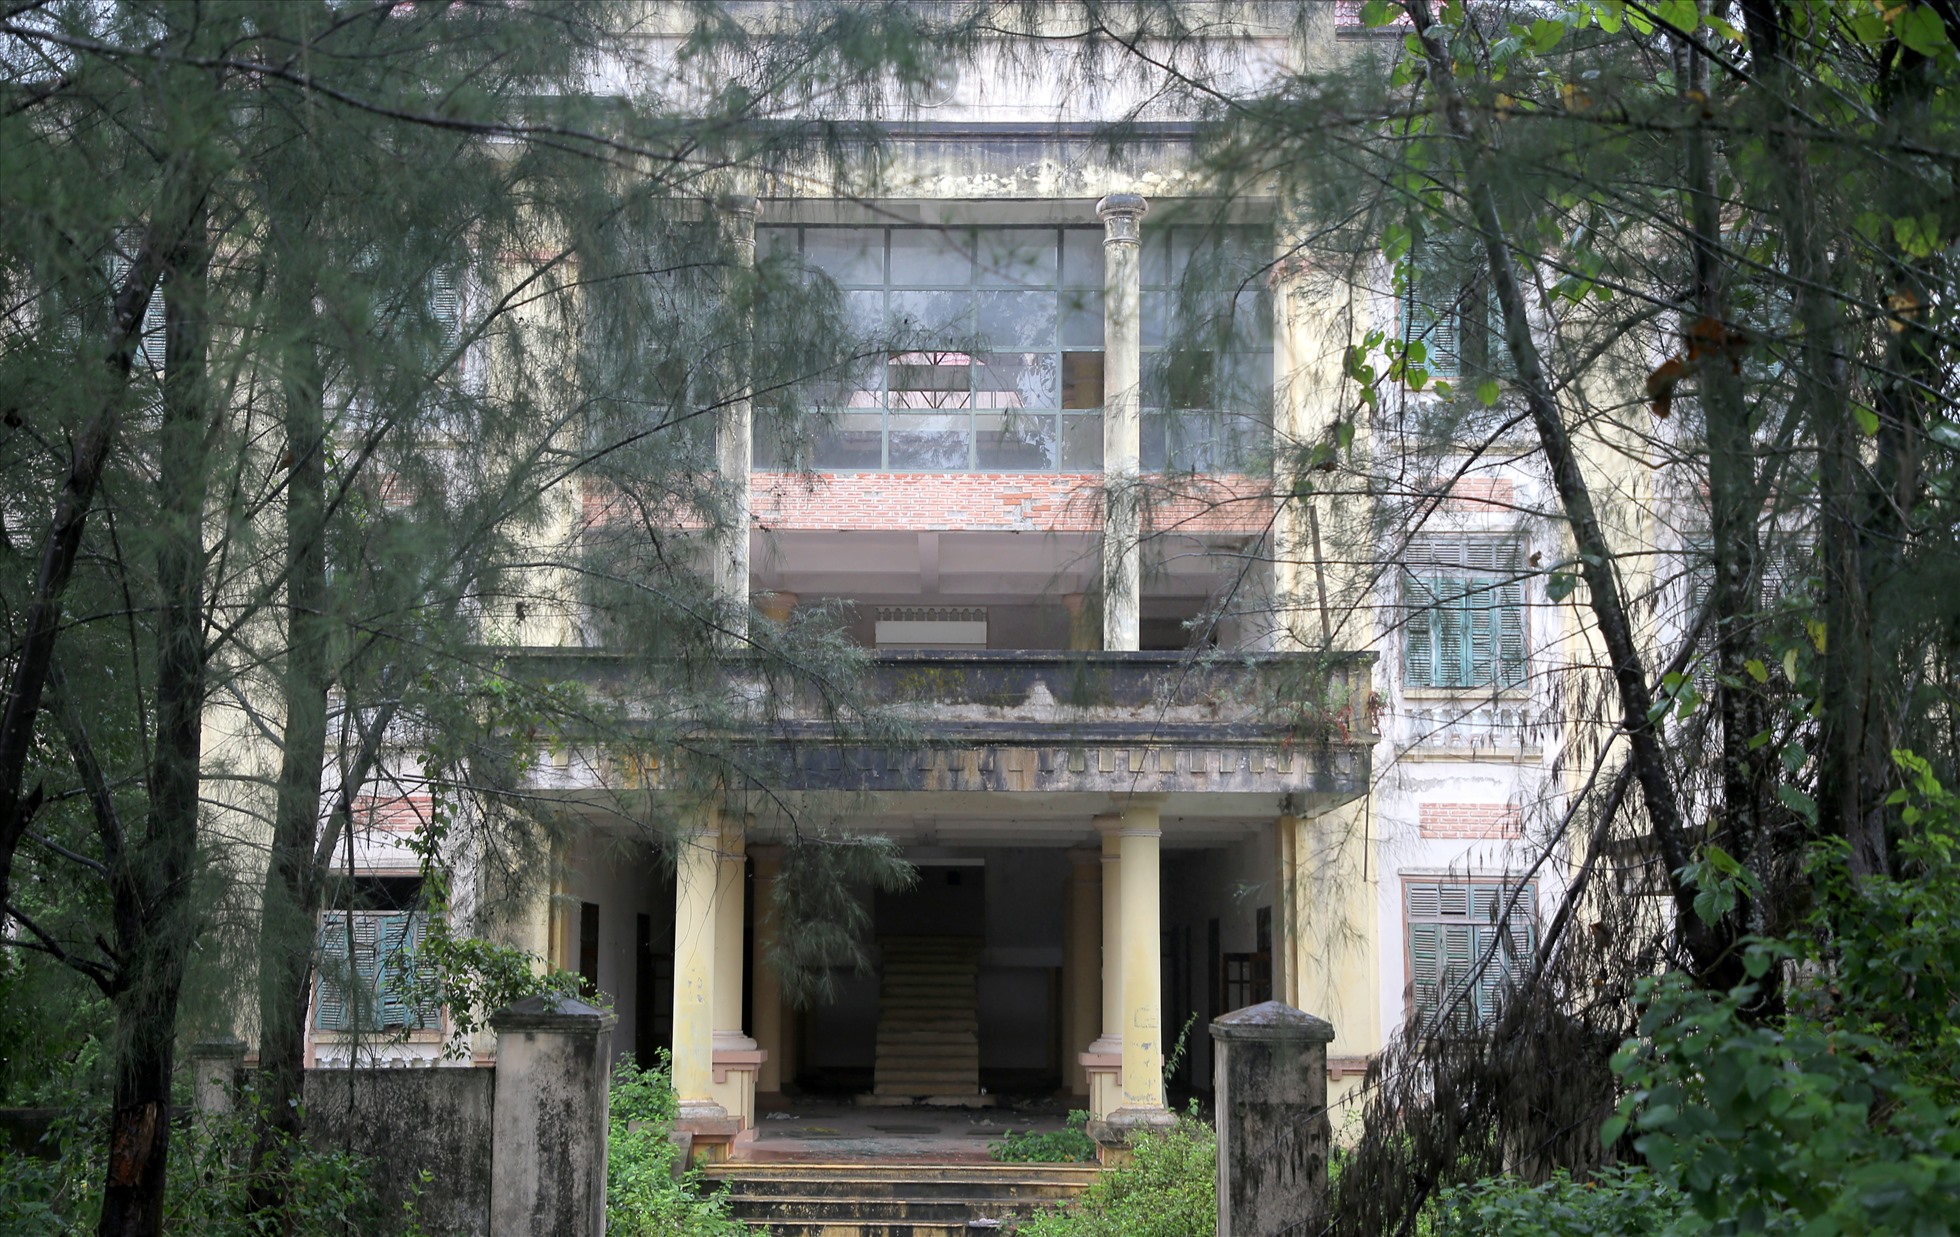 Trong số các trụ sở bỏ hoang lâu ngày ở tỉnh Quảng Trị, trụ sở cũ của TAND TP.Đông Hà có lẽ là công trình lãng phí và xuống cấp nhất.